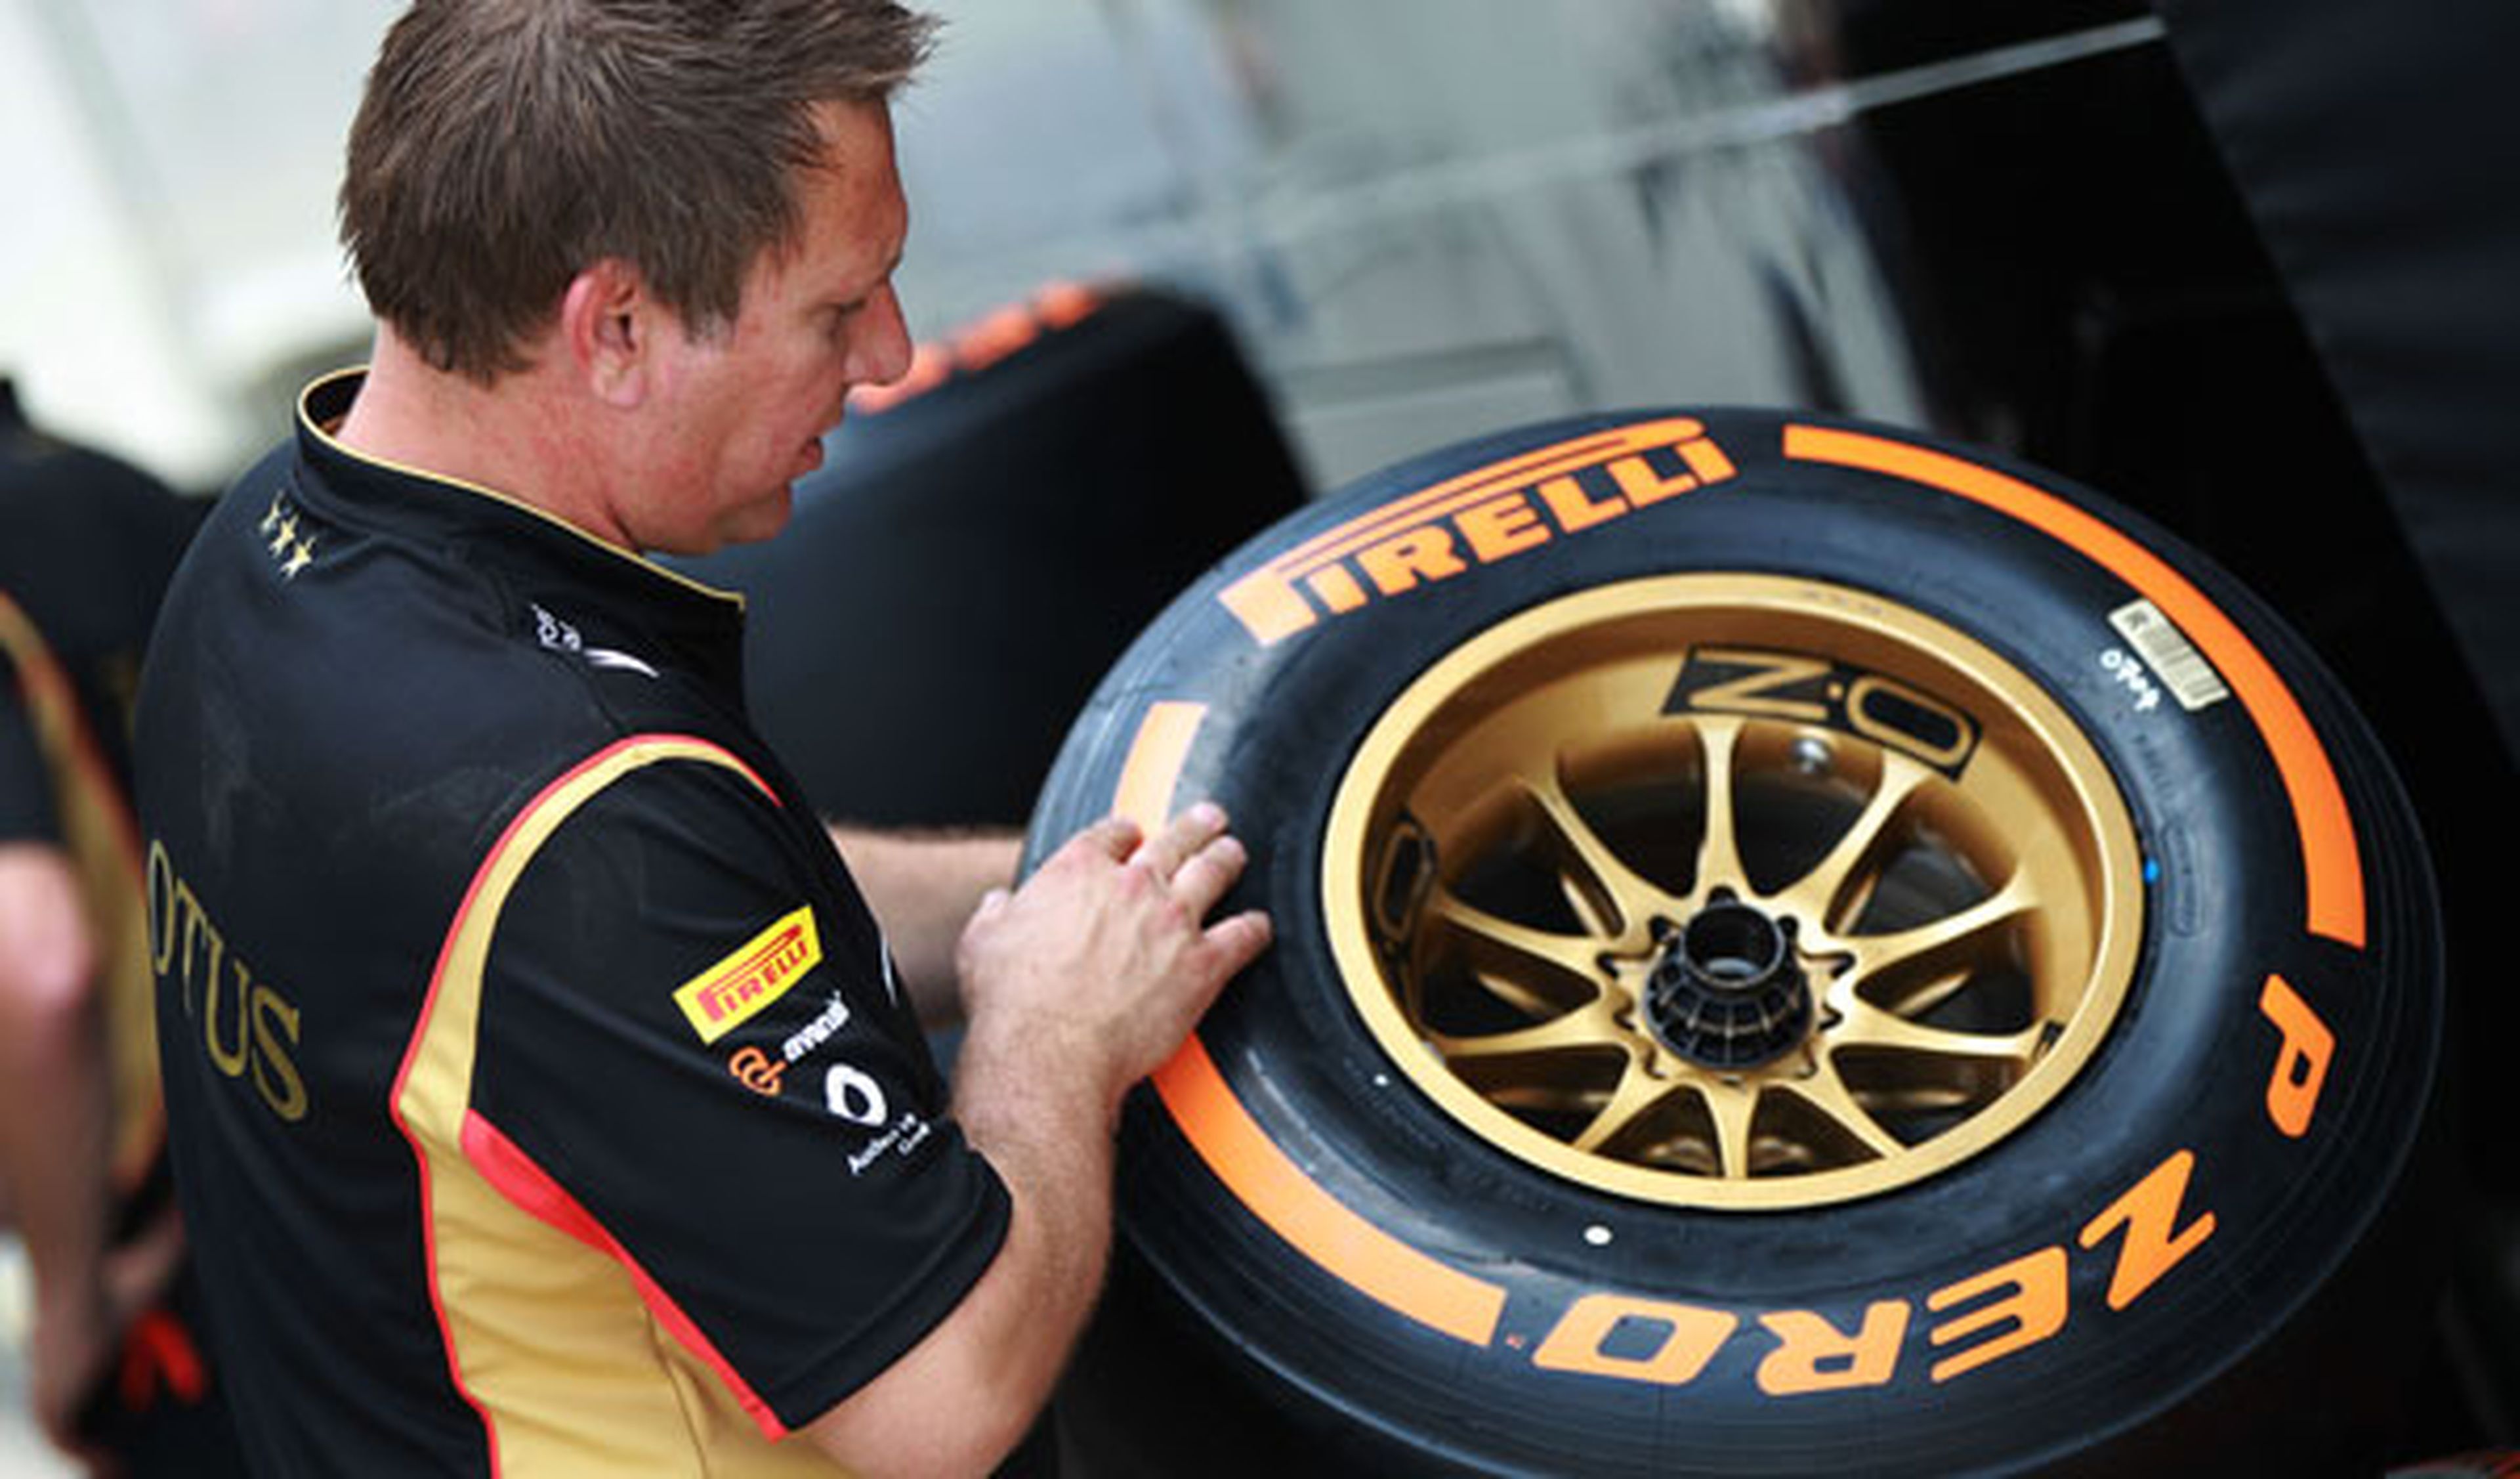 ¿Por qué reventaron los neumáticos Pirelli en Silverstone?